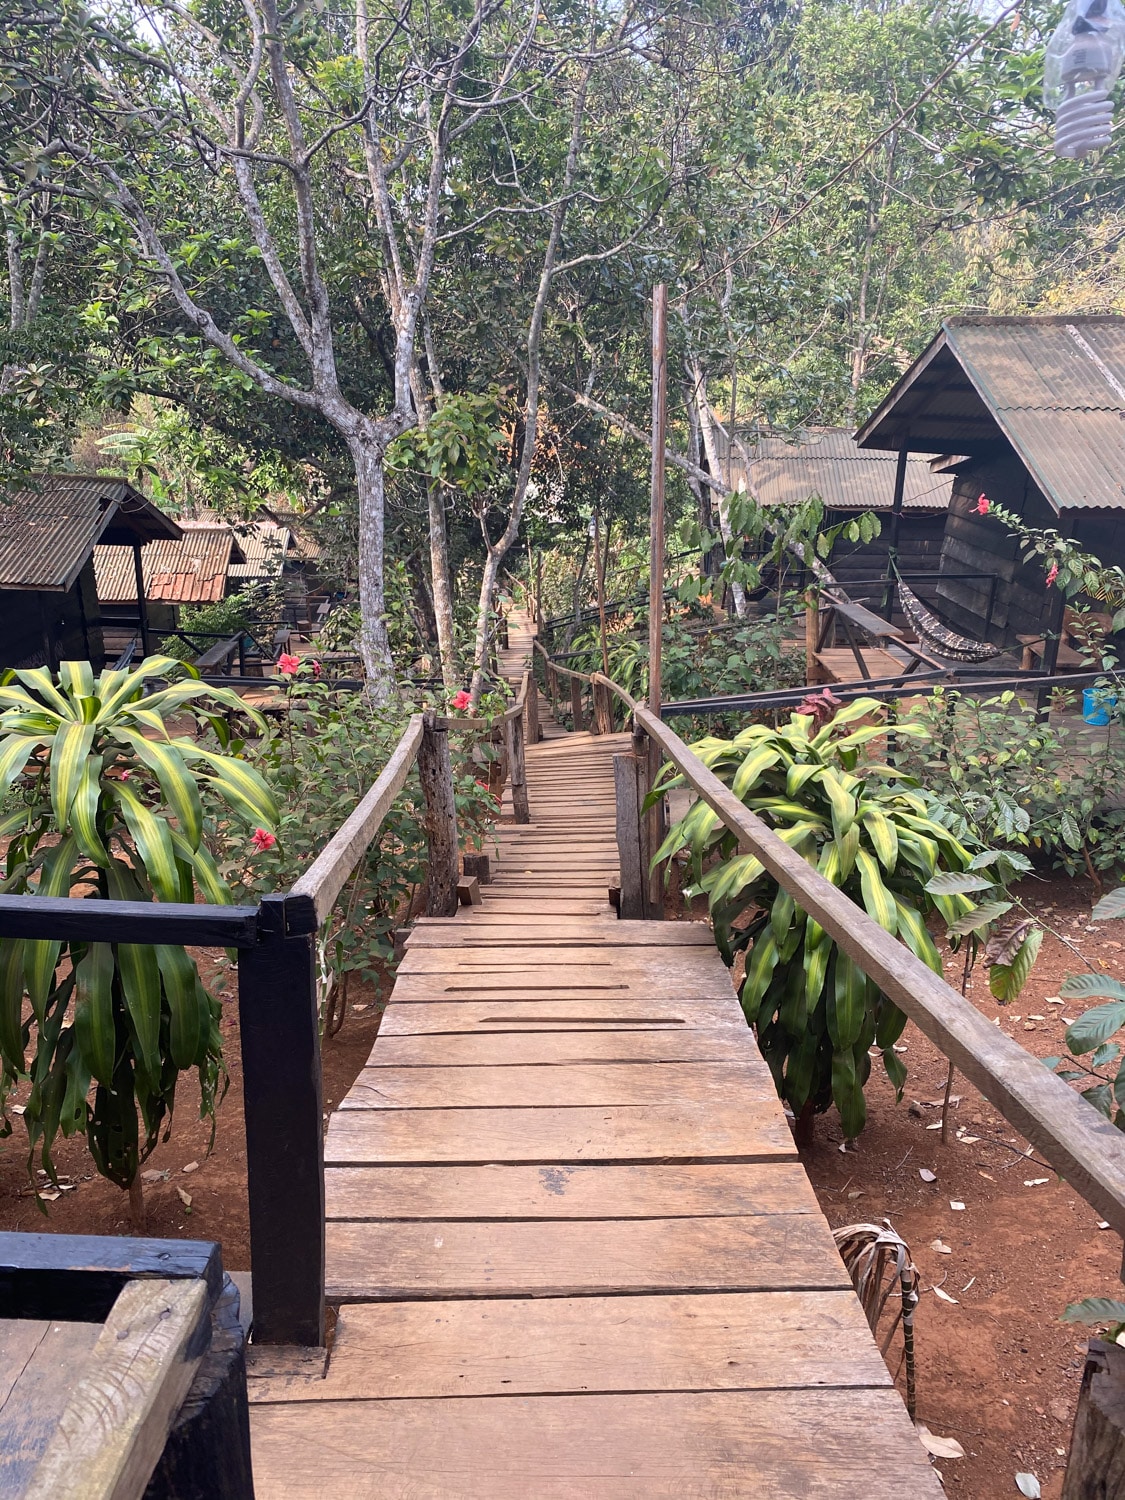 Banlung bungalow en bambou. Voyager au cambodge hors des sentiers battus